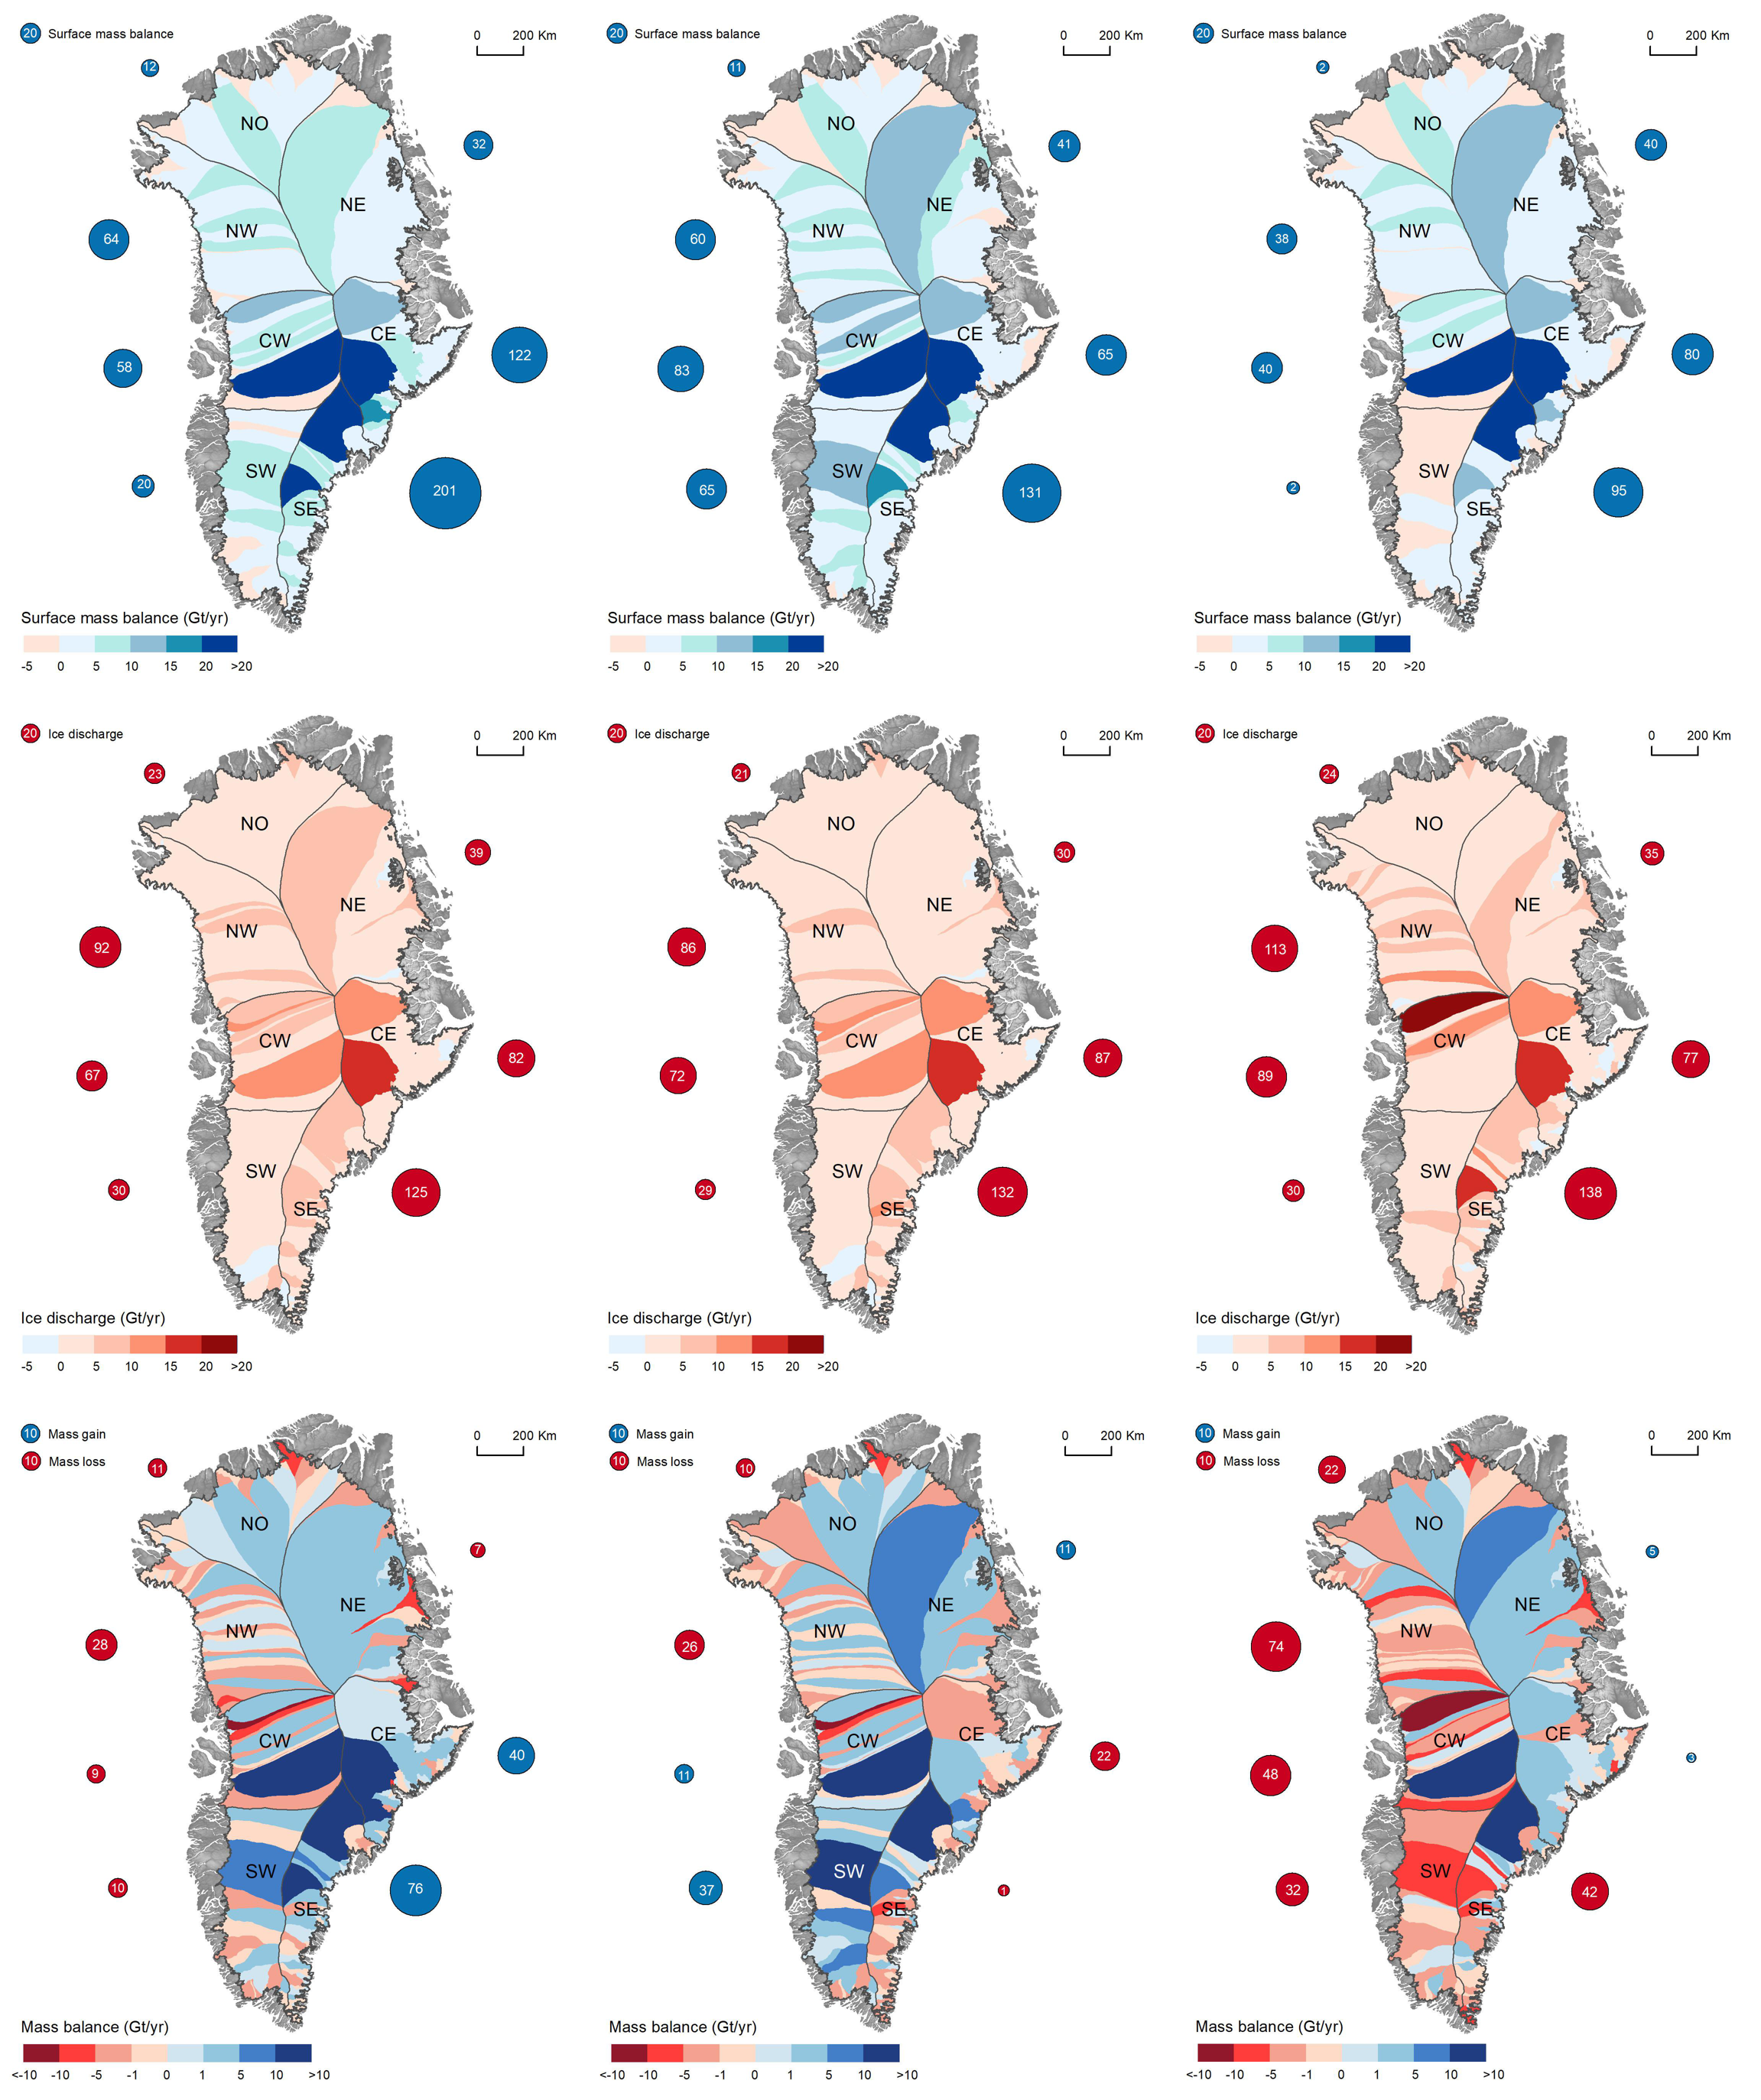 格陵兰冰盖物质平衡数据集（1985-2015）